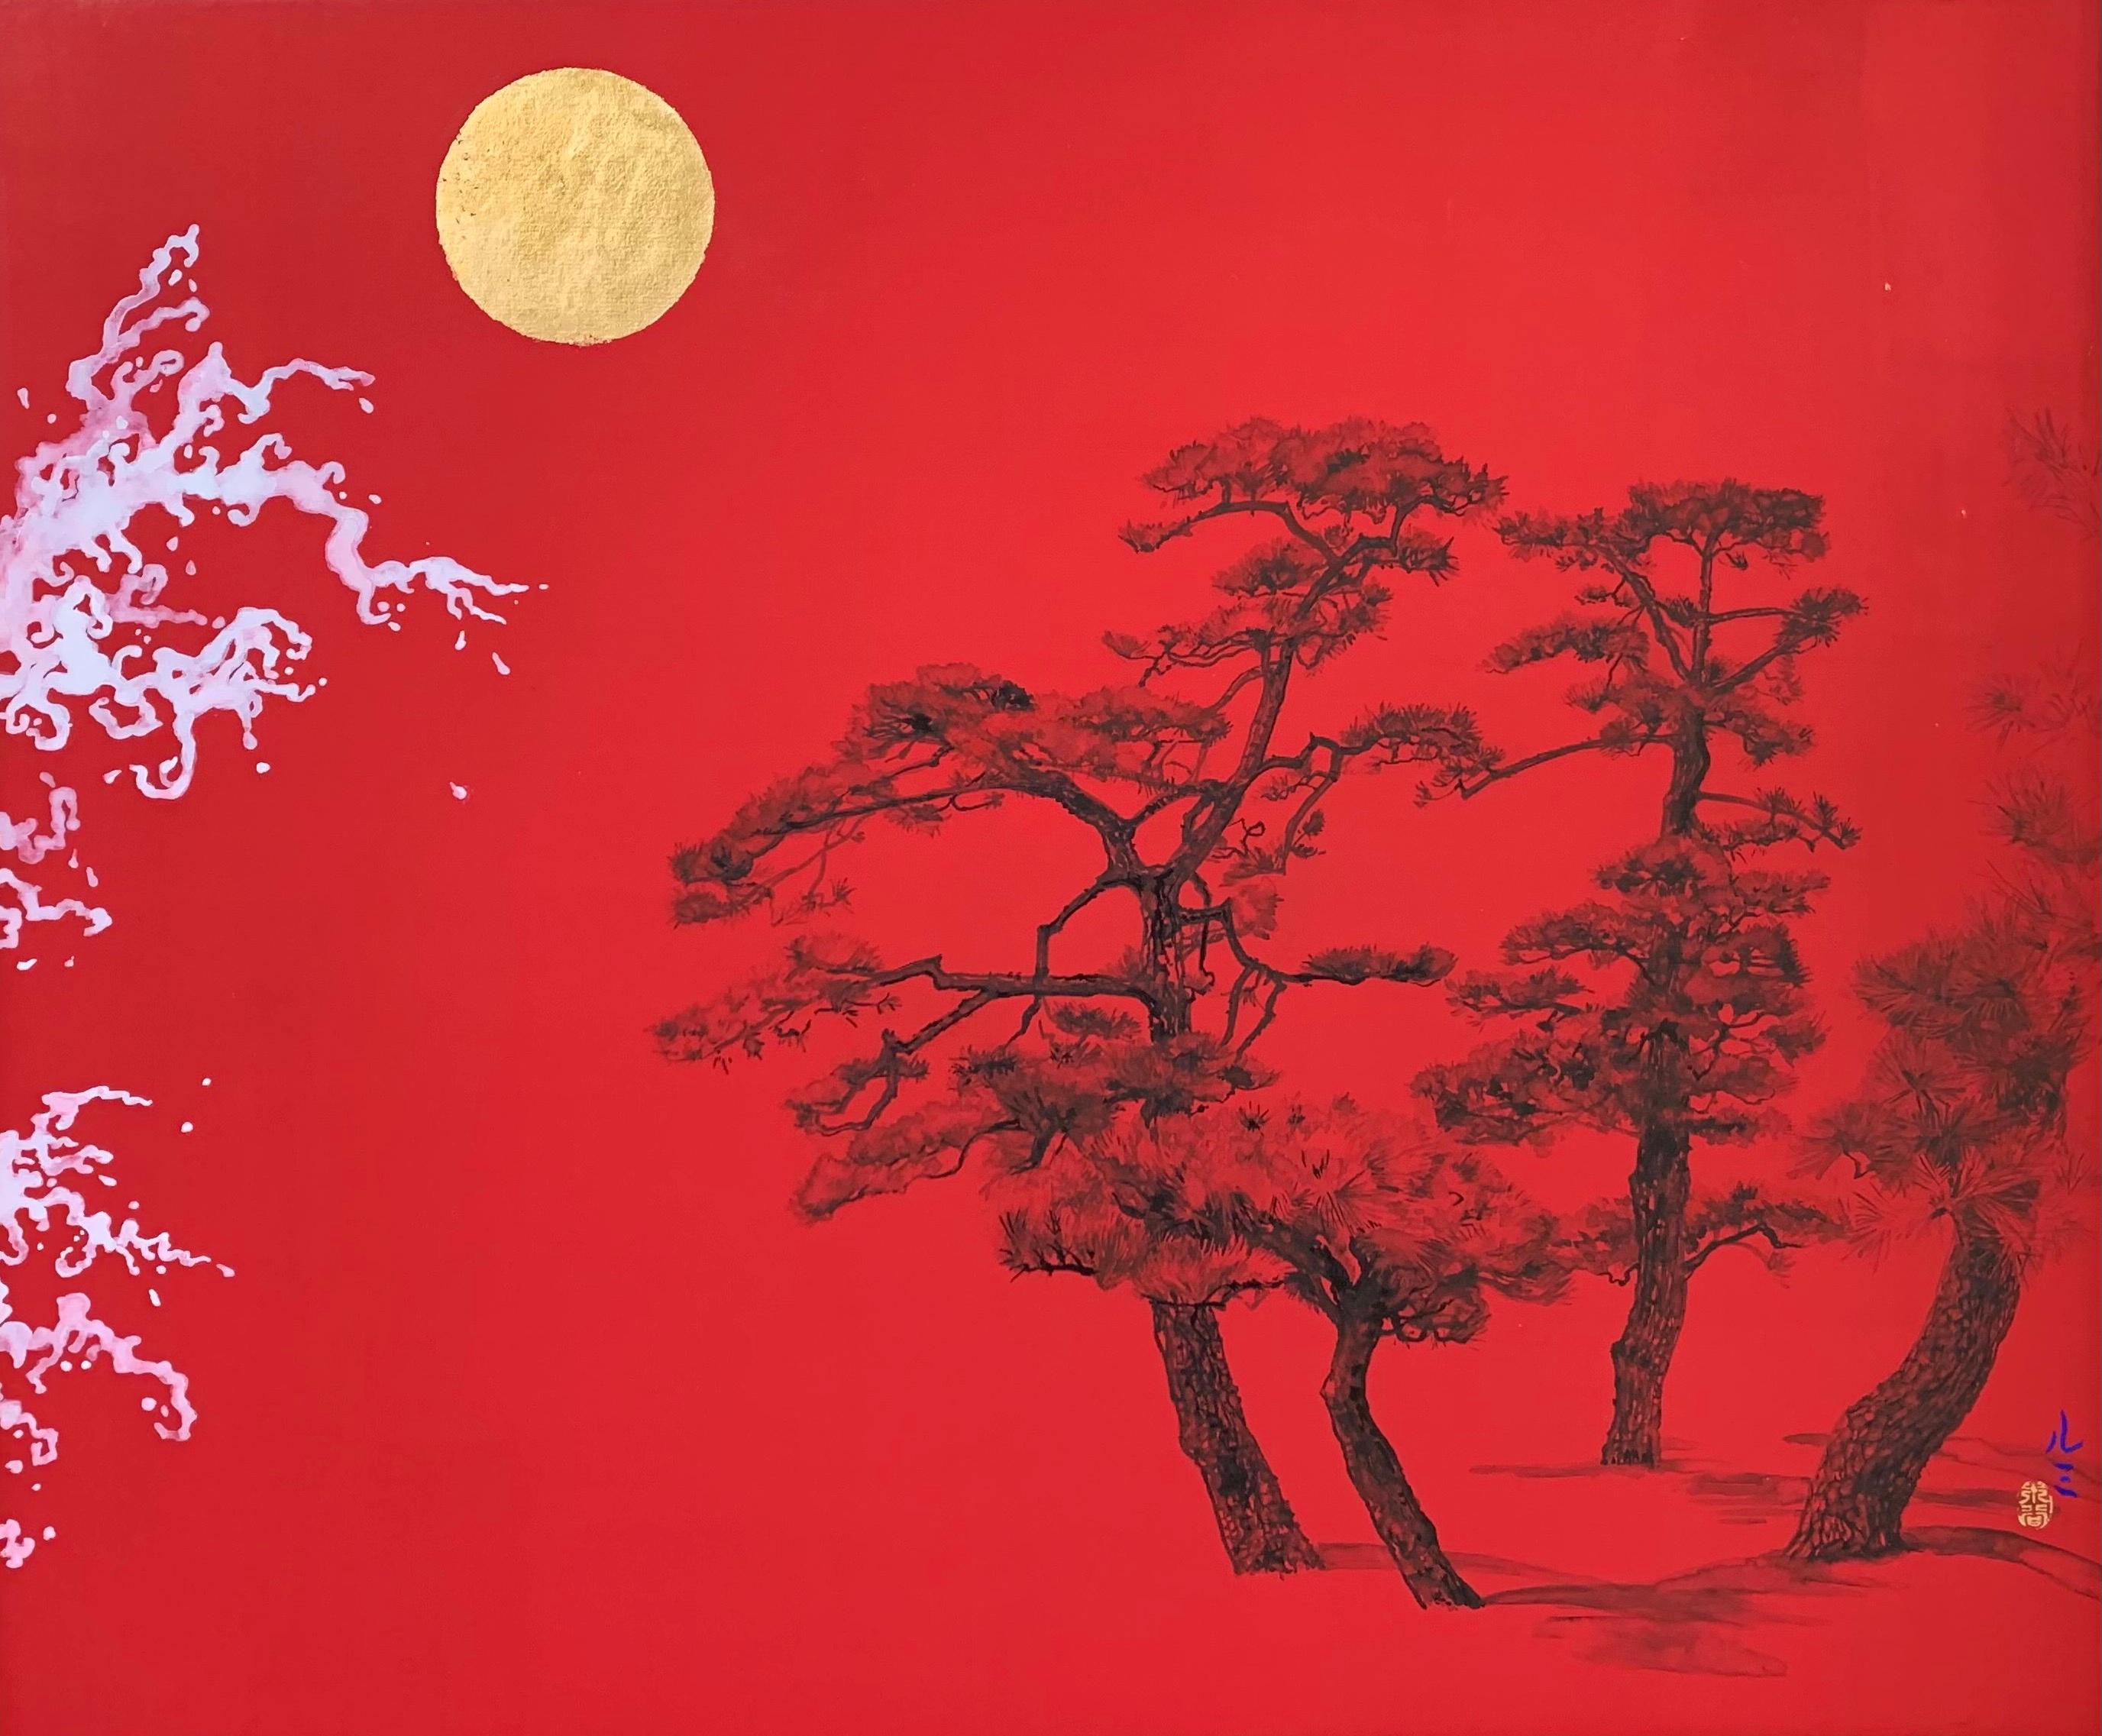 Pines facing waves II ist ein einzigartiges Gemälde des zeitgenössischen Künstlers Lumi Mizutani. Das Gemälde ist mit Tusche, chinesischer Malerei und Blattgold auf japanischem Karton gemalt und hat die Maße 37,9 × 45,5 cm (14,9 × 17,9 in). Die